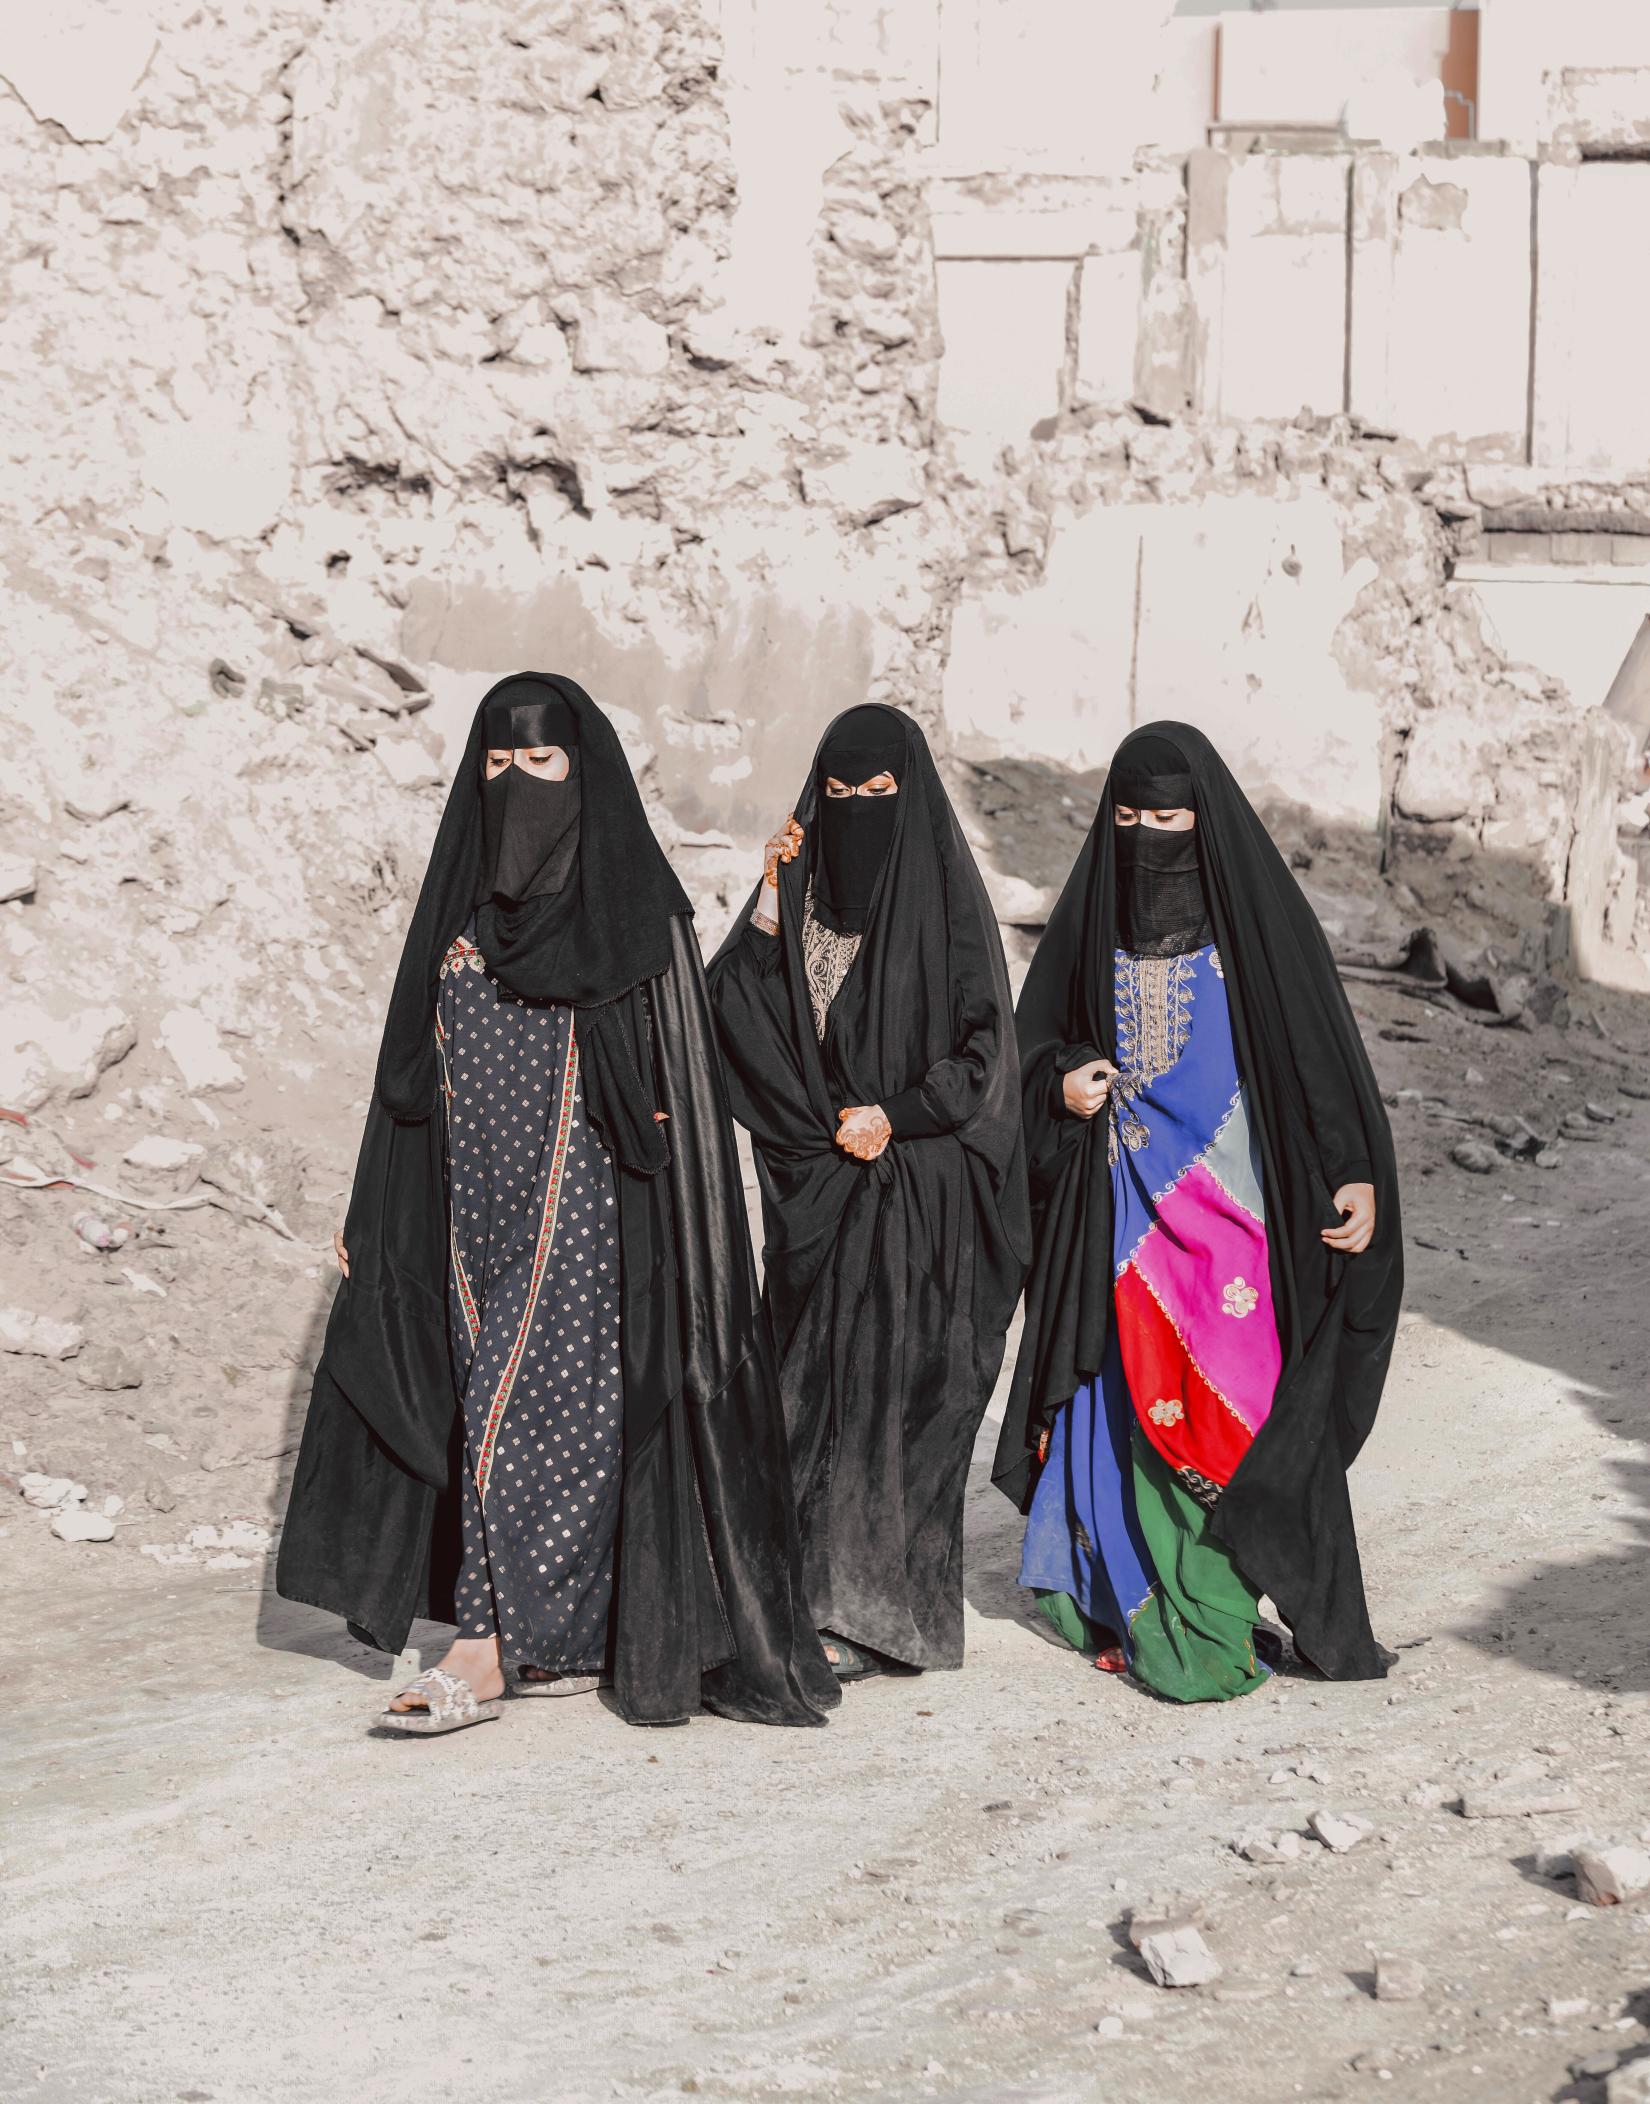 Saudi Women in Traditional Attire